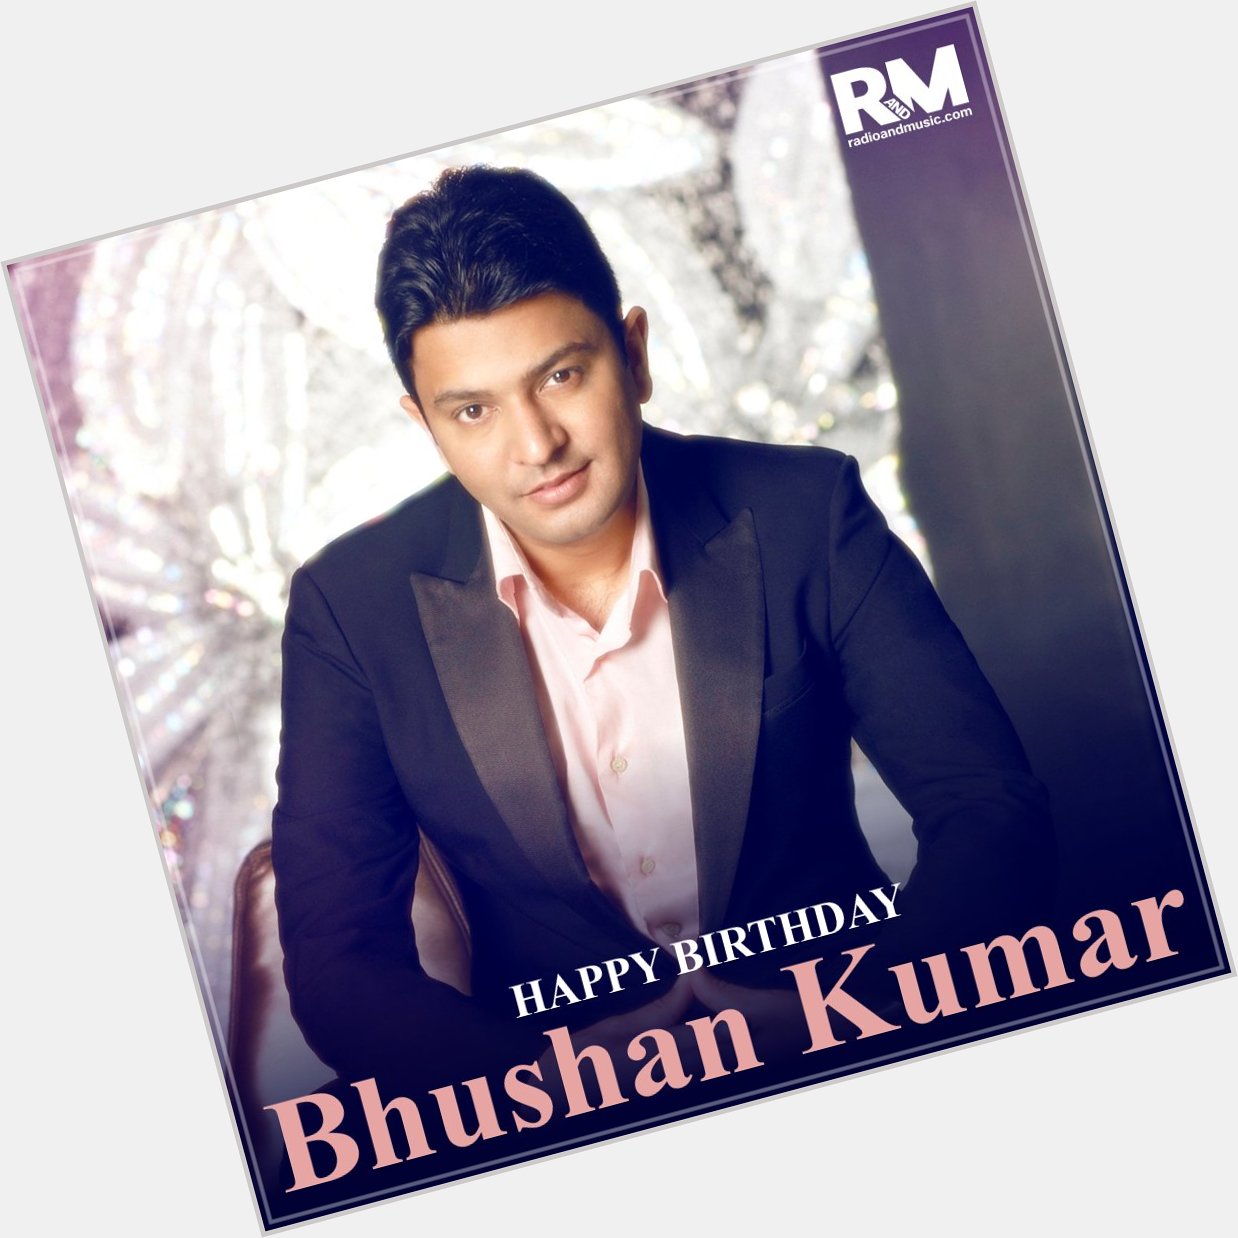 Wishing Bhushan Kumar a very happy birthday!       